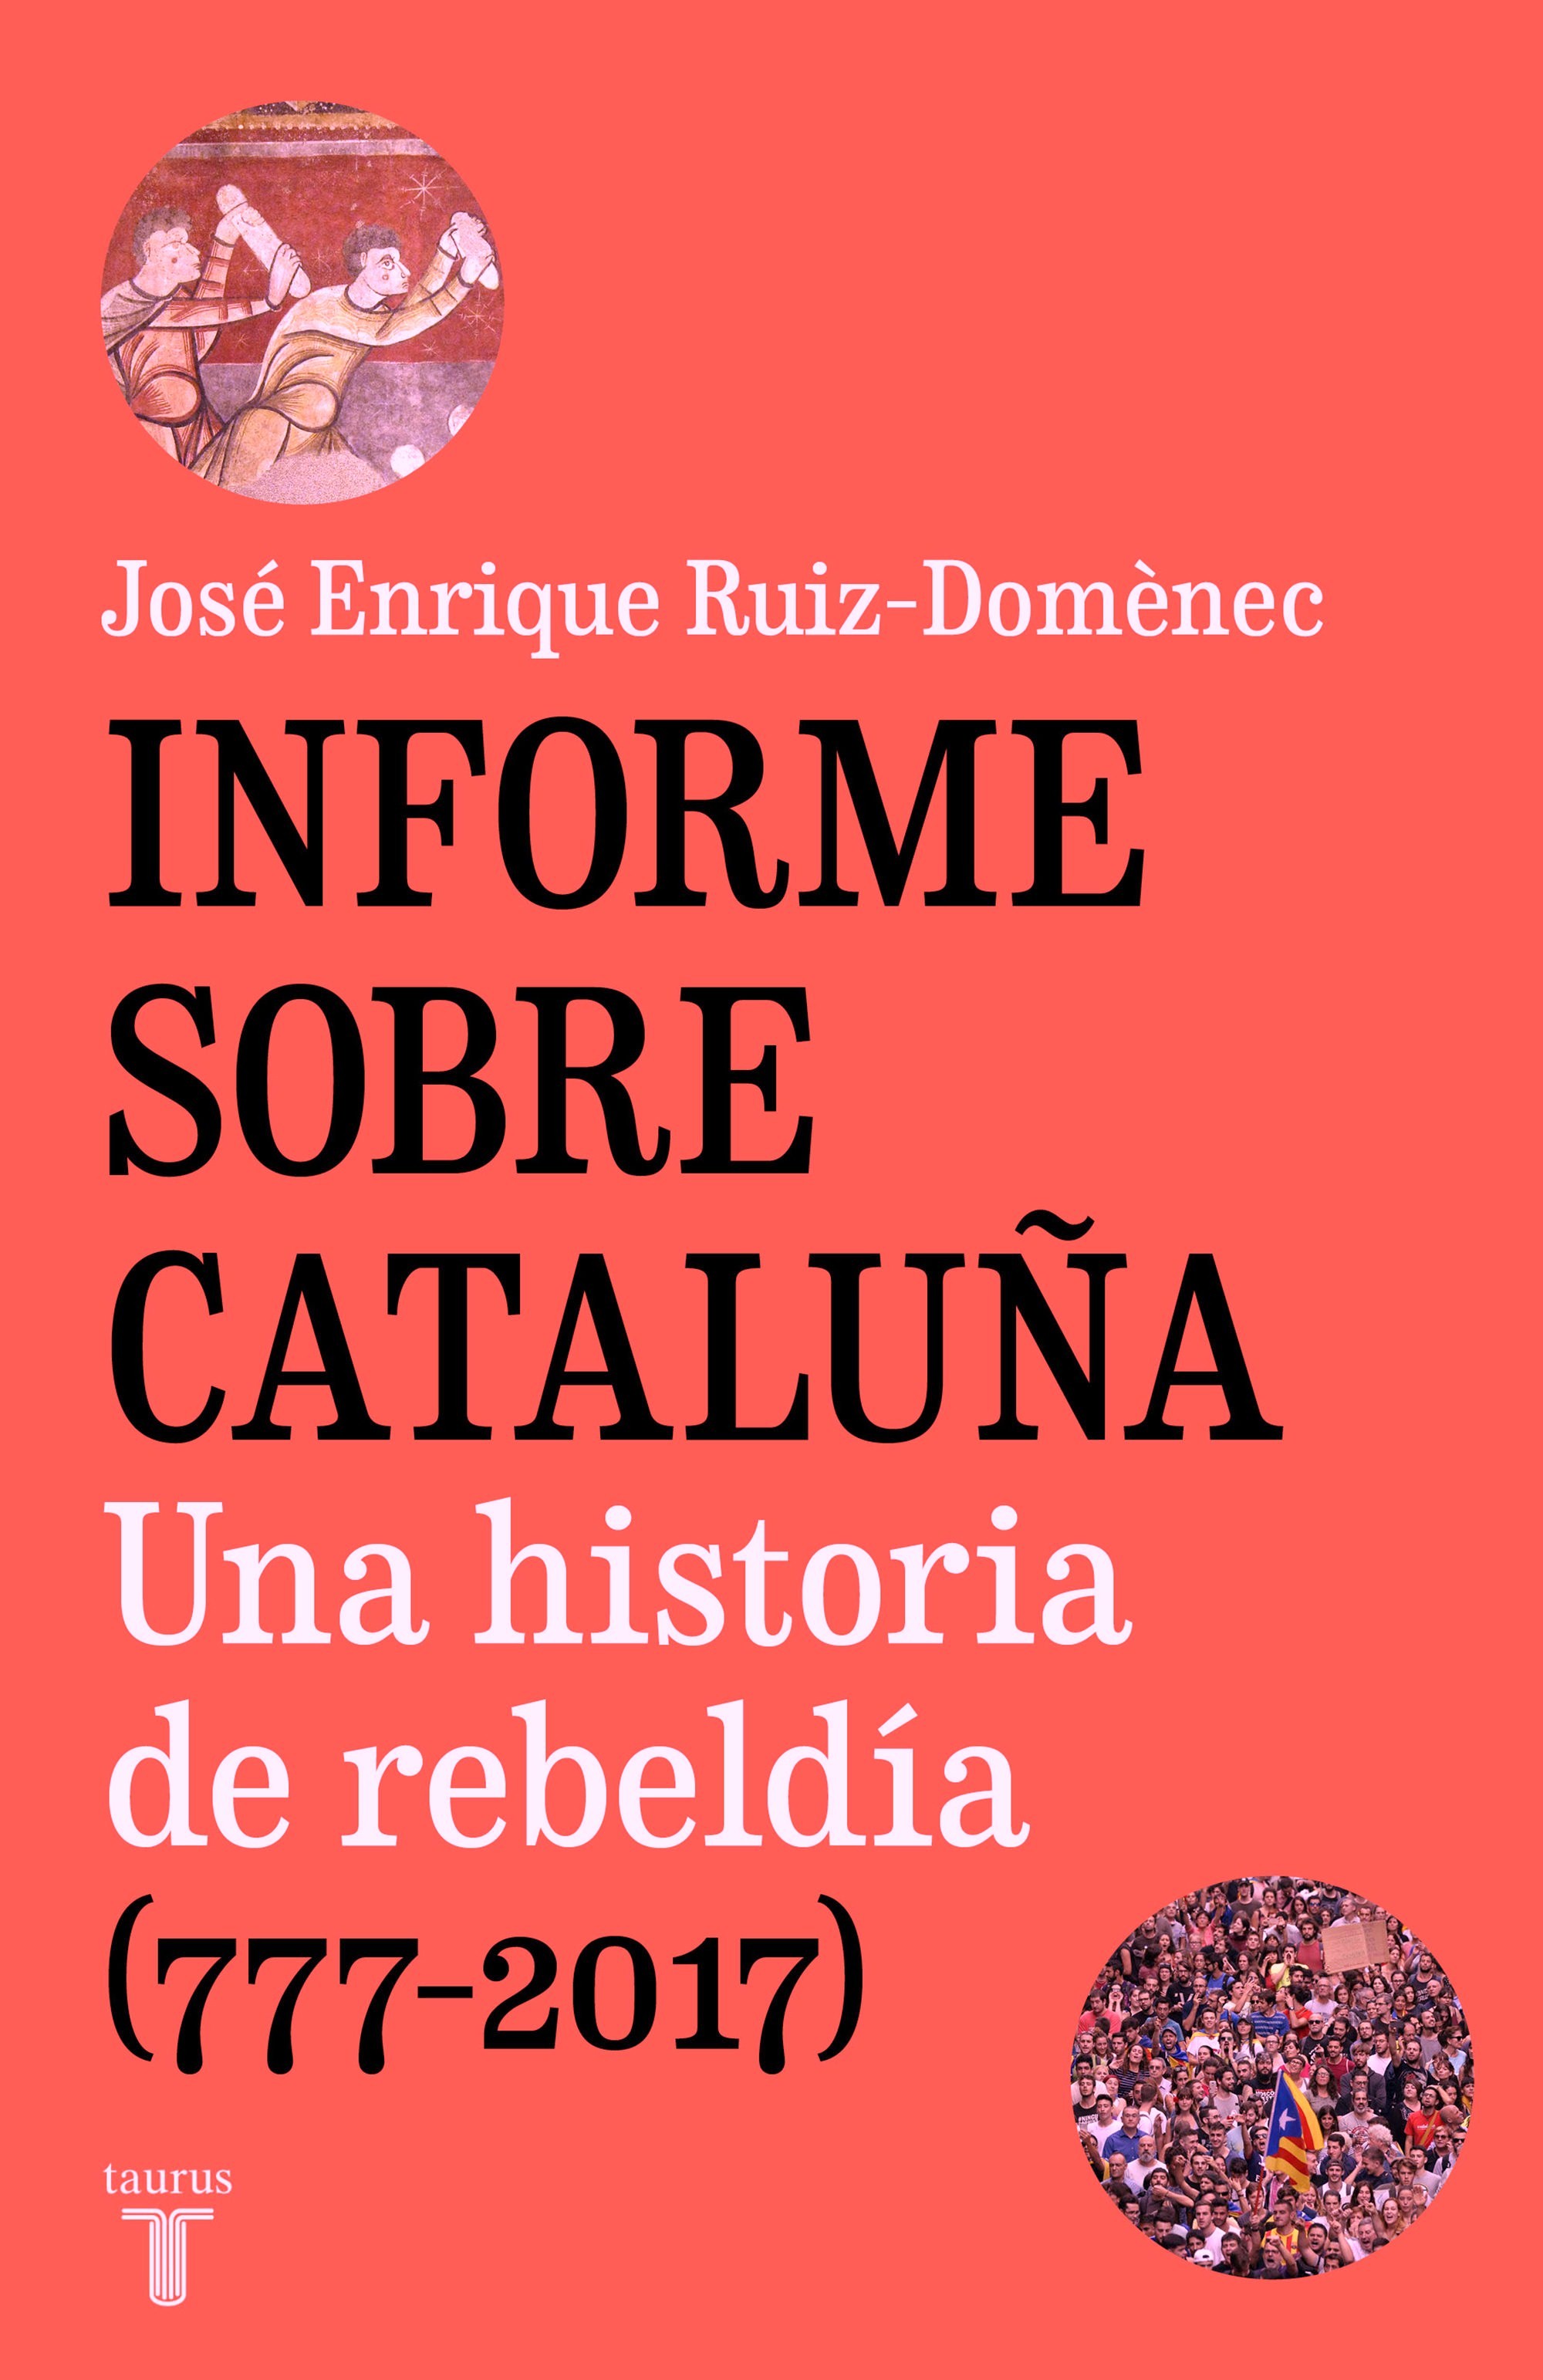 Presentación del libro Informe sobre Cataluña.Una historia de rebeldía (777-2017) de José Enrique Ruiz-Domènec. 336